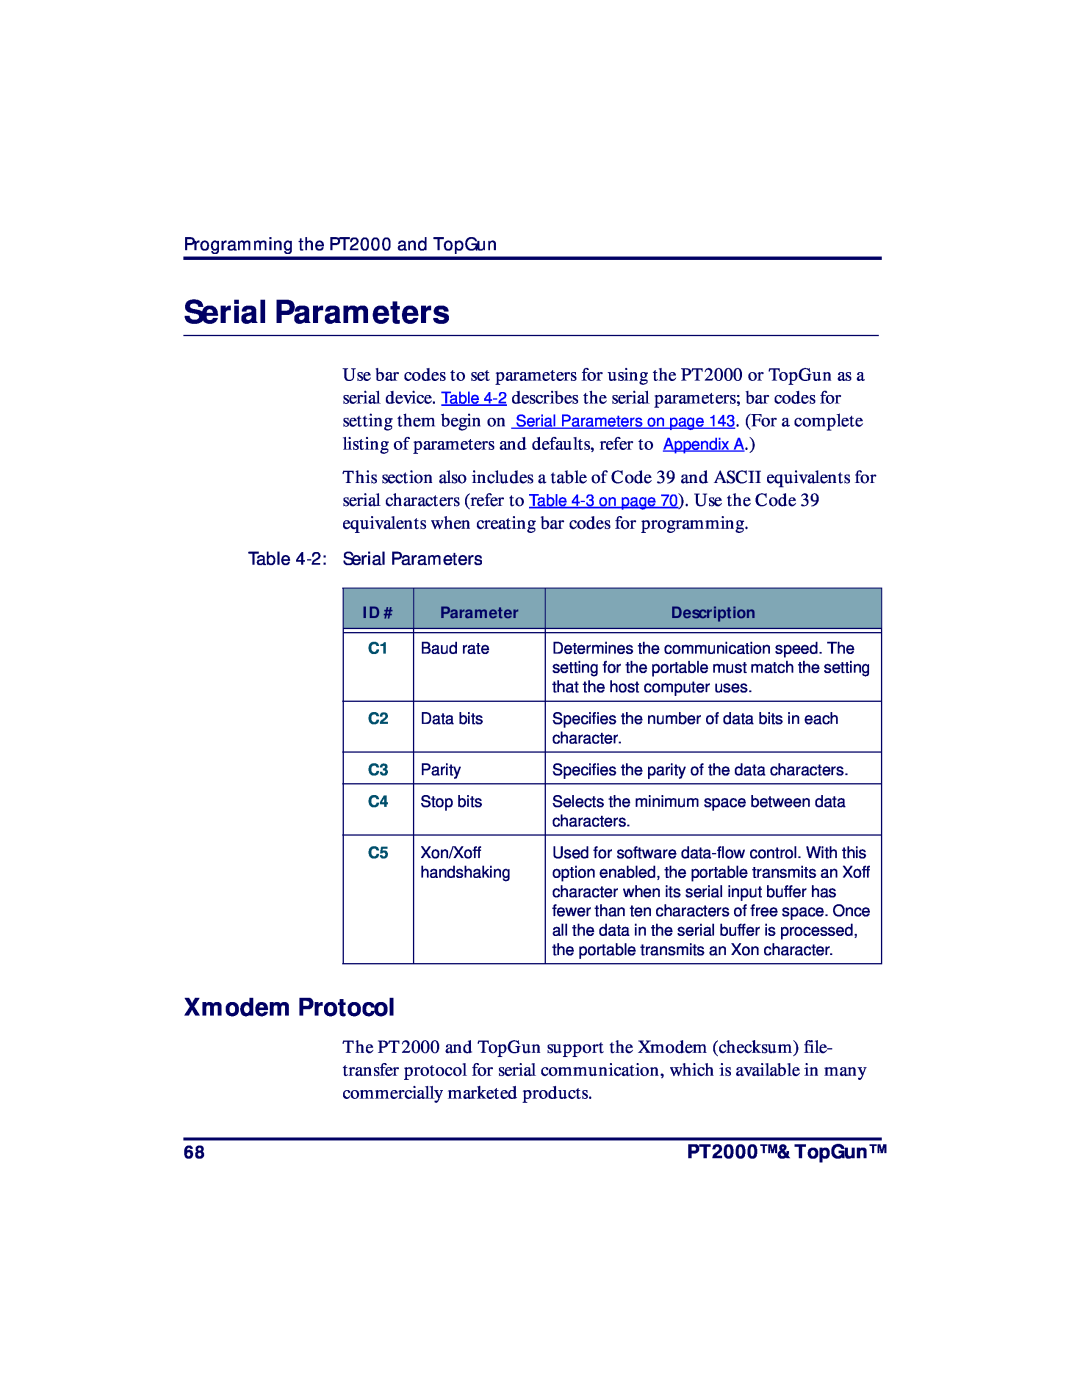 PSC TopGun, PT2000 manual Serial Parameters, Xmodem Protocol 